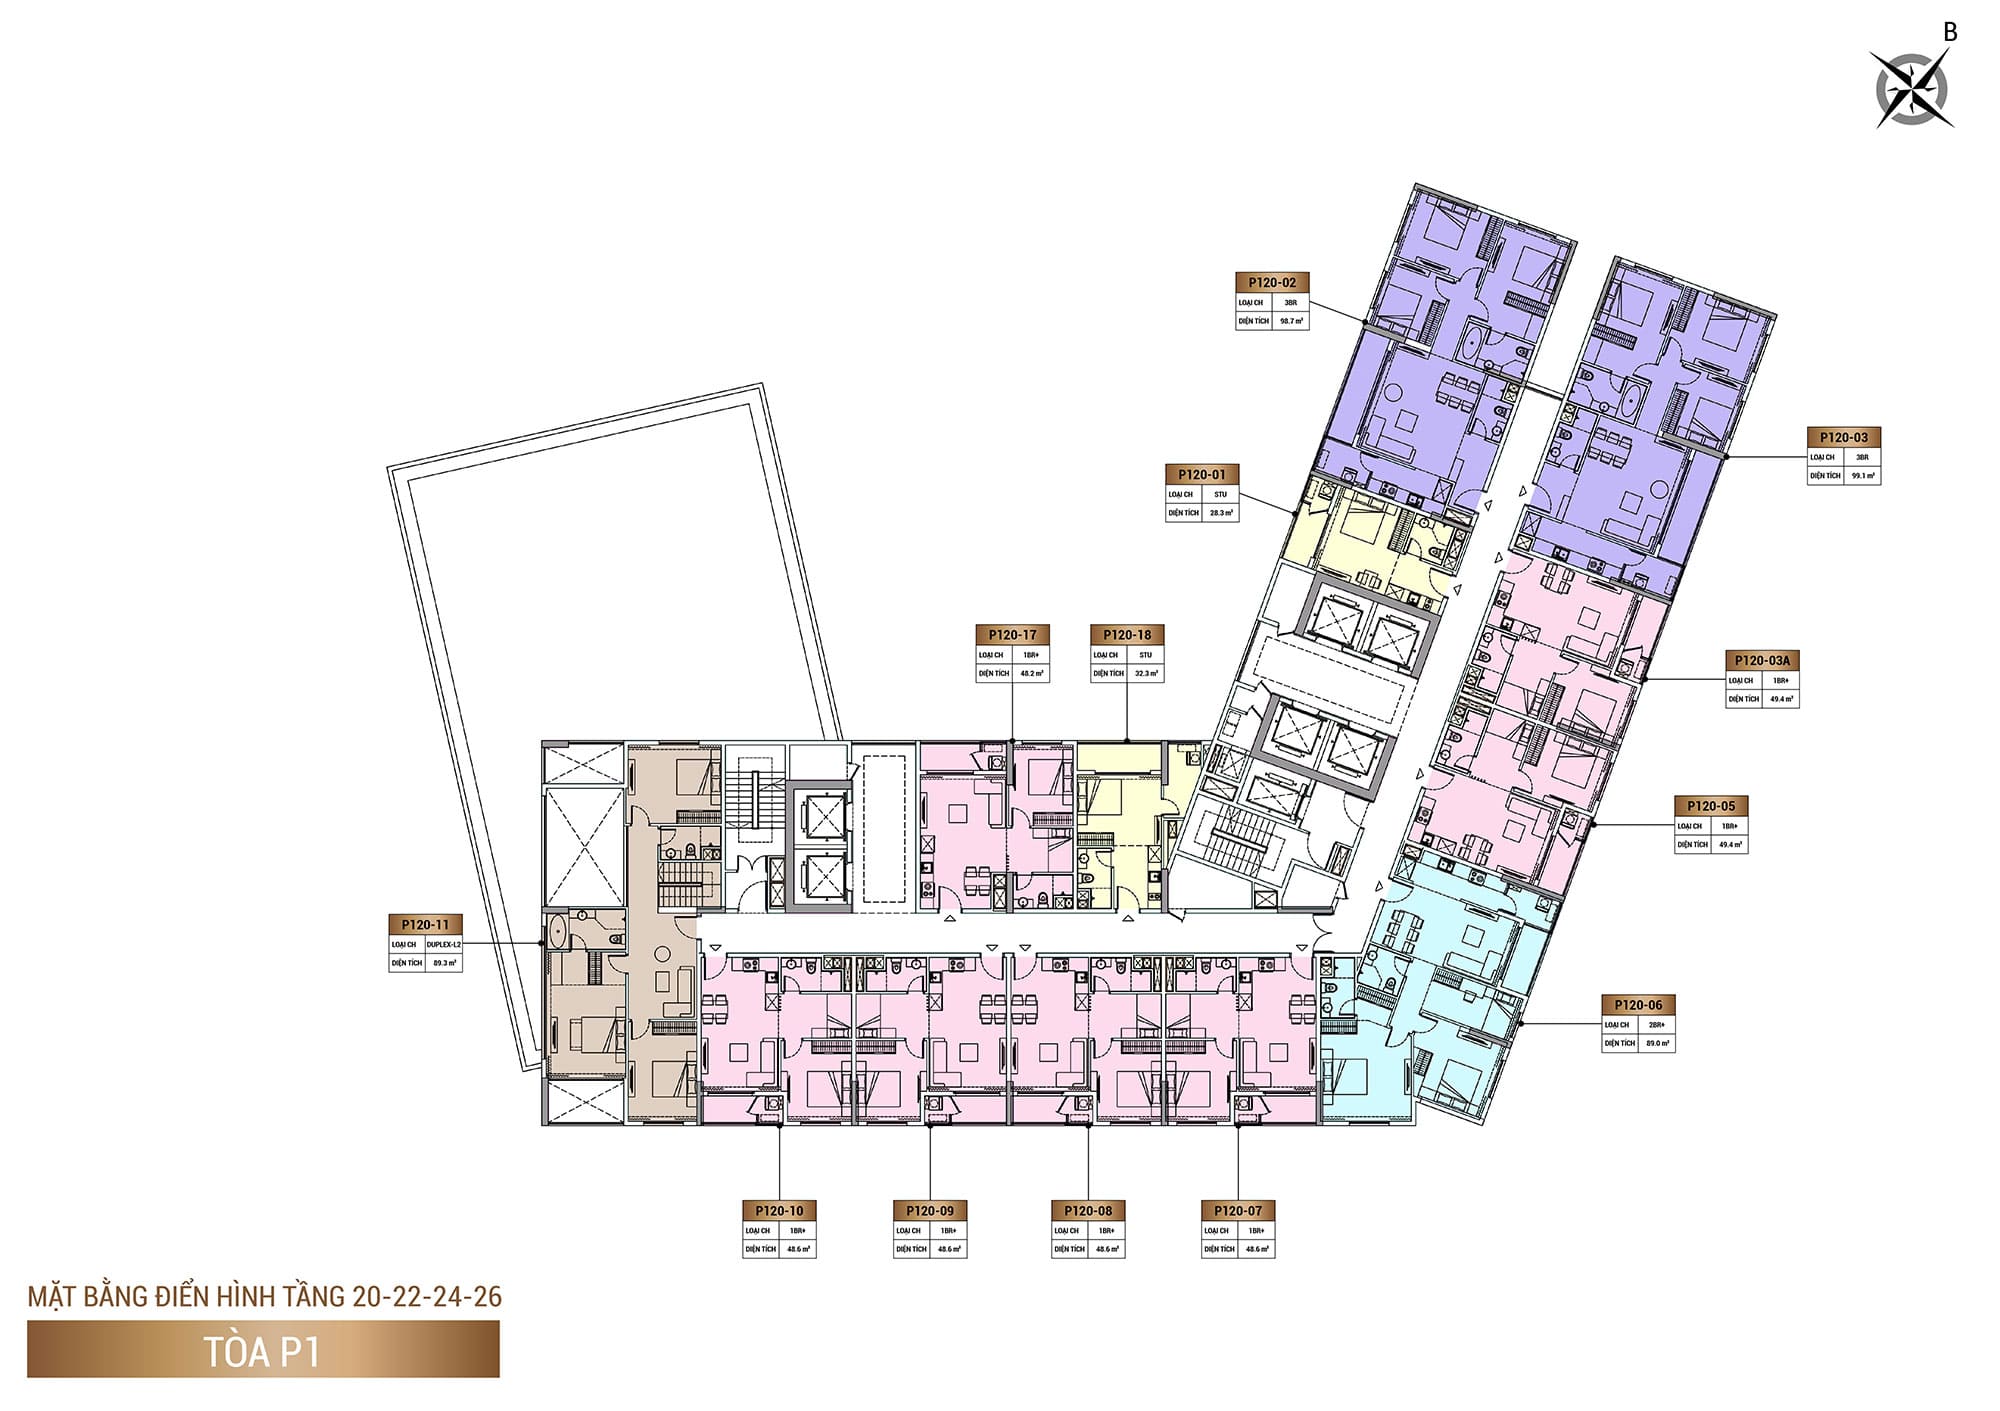 Mặt bằng Tầng 20, Tầng 22, Tầng 24, Tầng 26, Tòa P1, phân khu The Panoma dự án Sun Cosmo Residence.